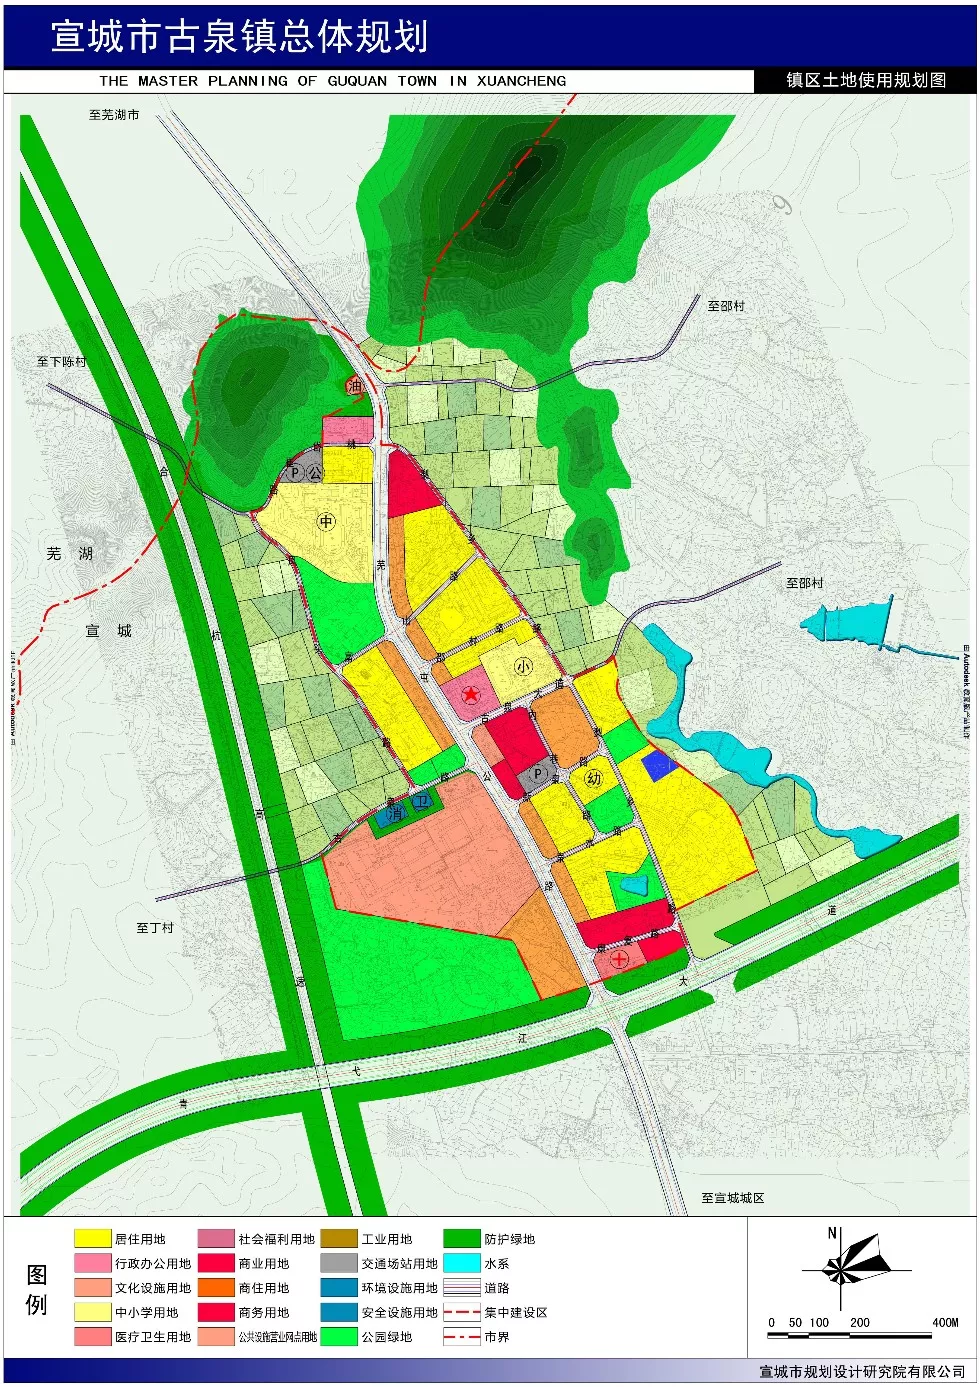 宣城市城市规划区范围内三乡镇总体规划进入批前公示阶段!